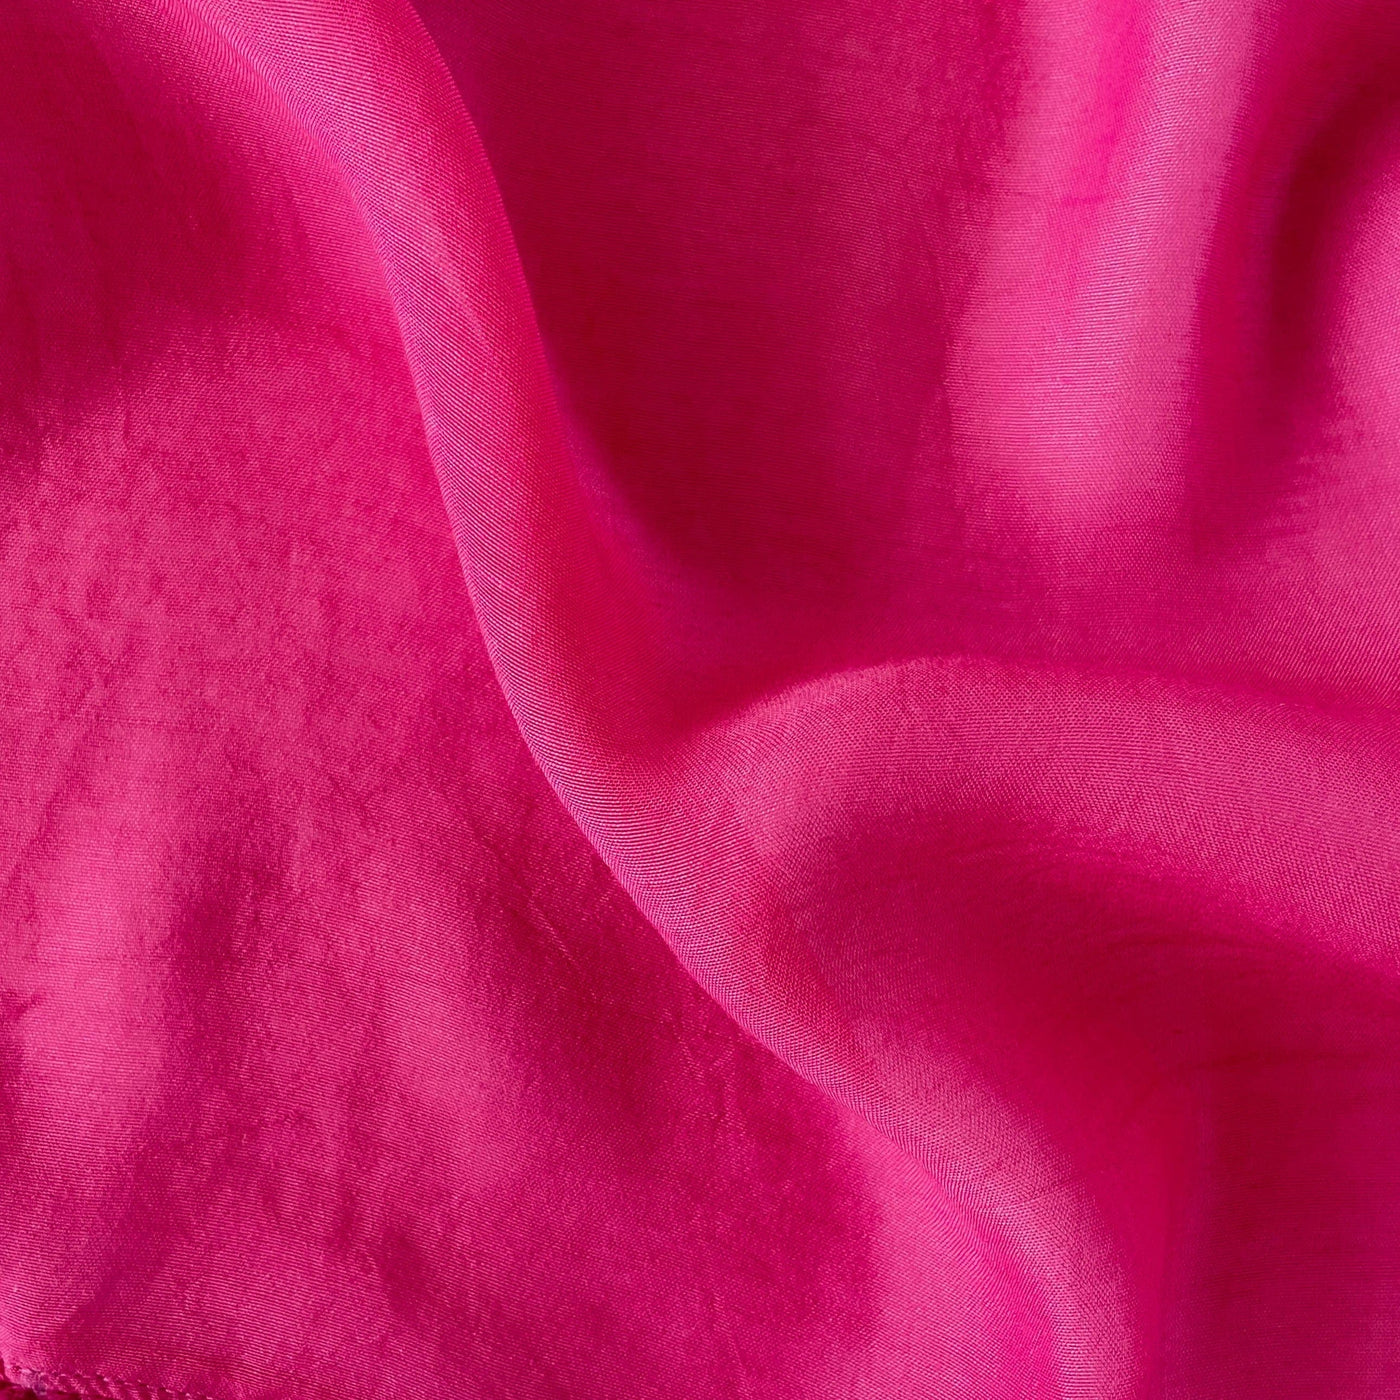 Munga Saree Cut Piece (CUT PIECE) Pink Colour Hand Dyed Soft Munga Fabric (Width 44 Inches)